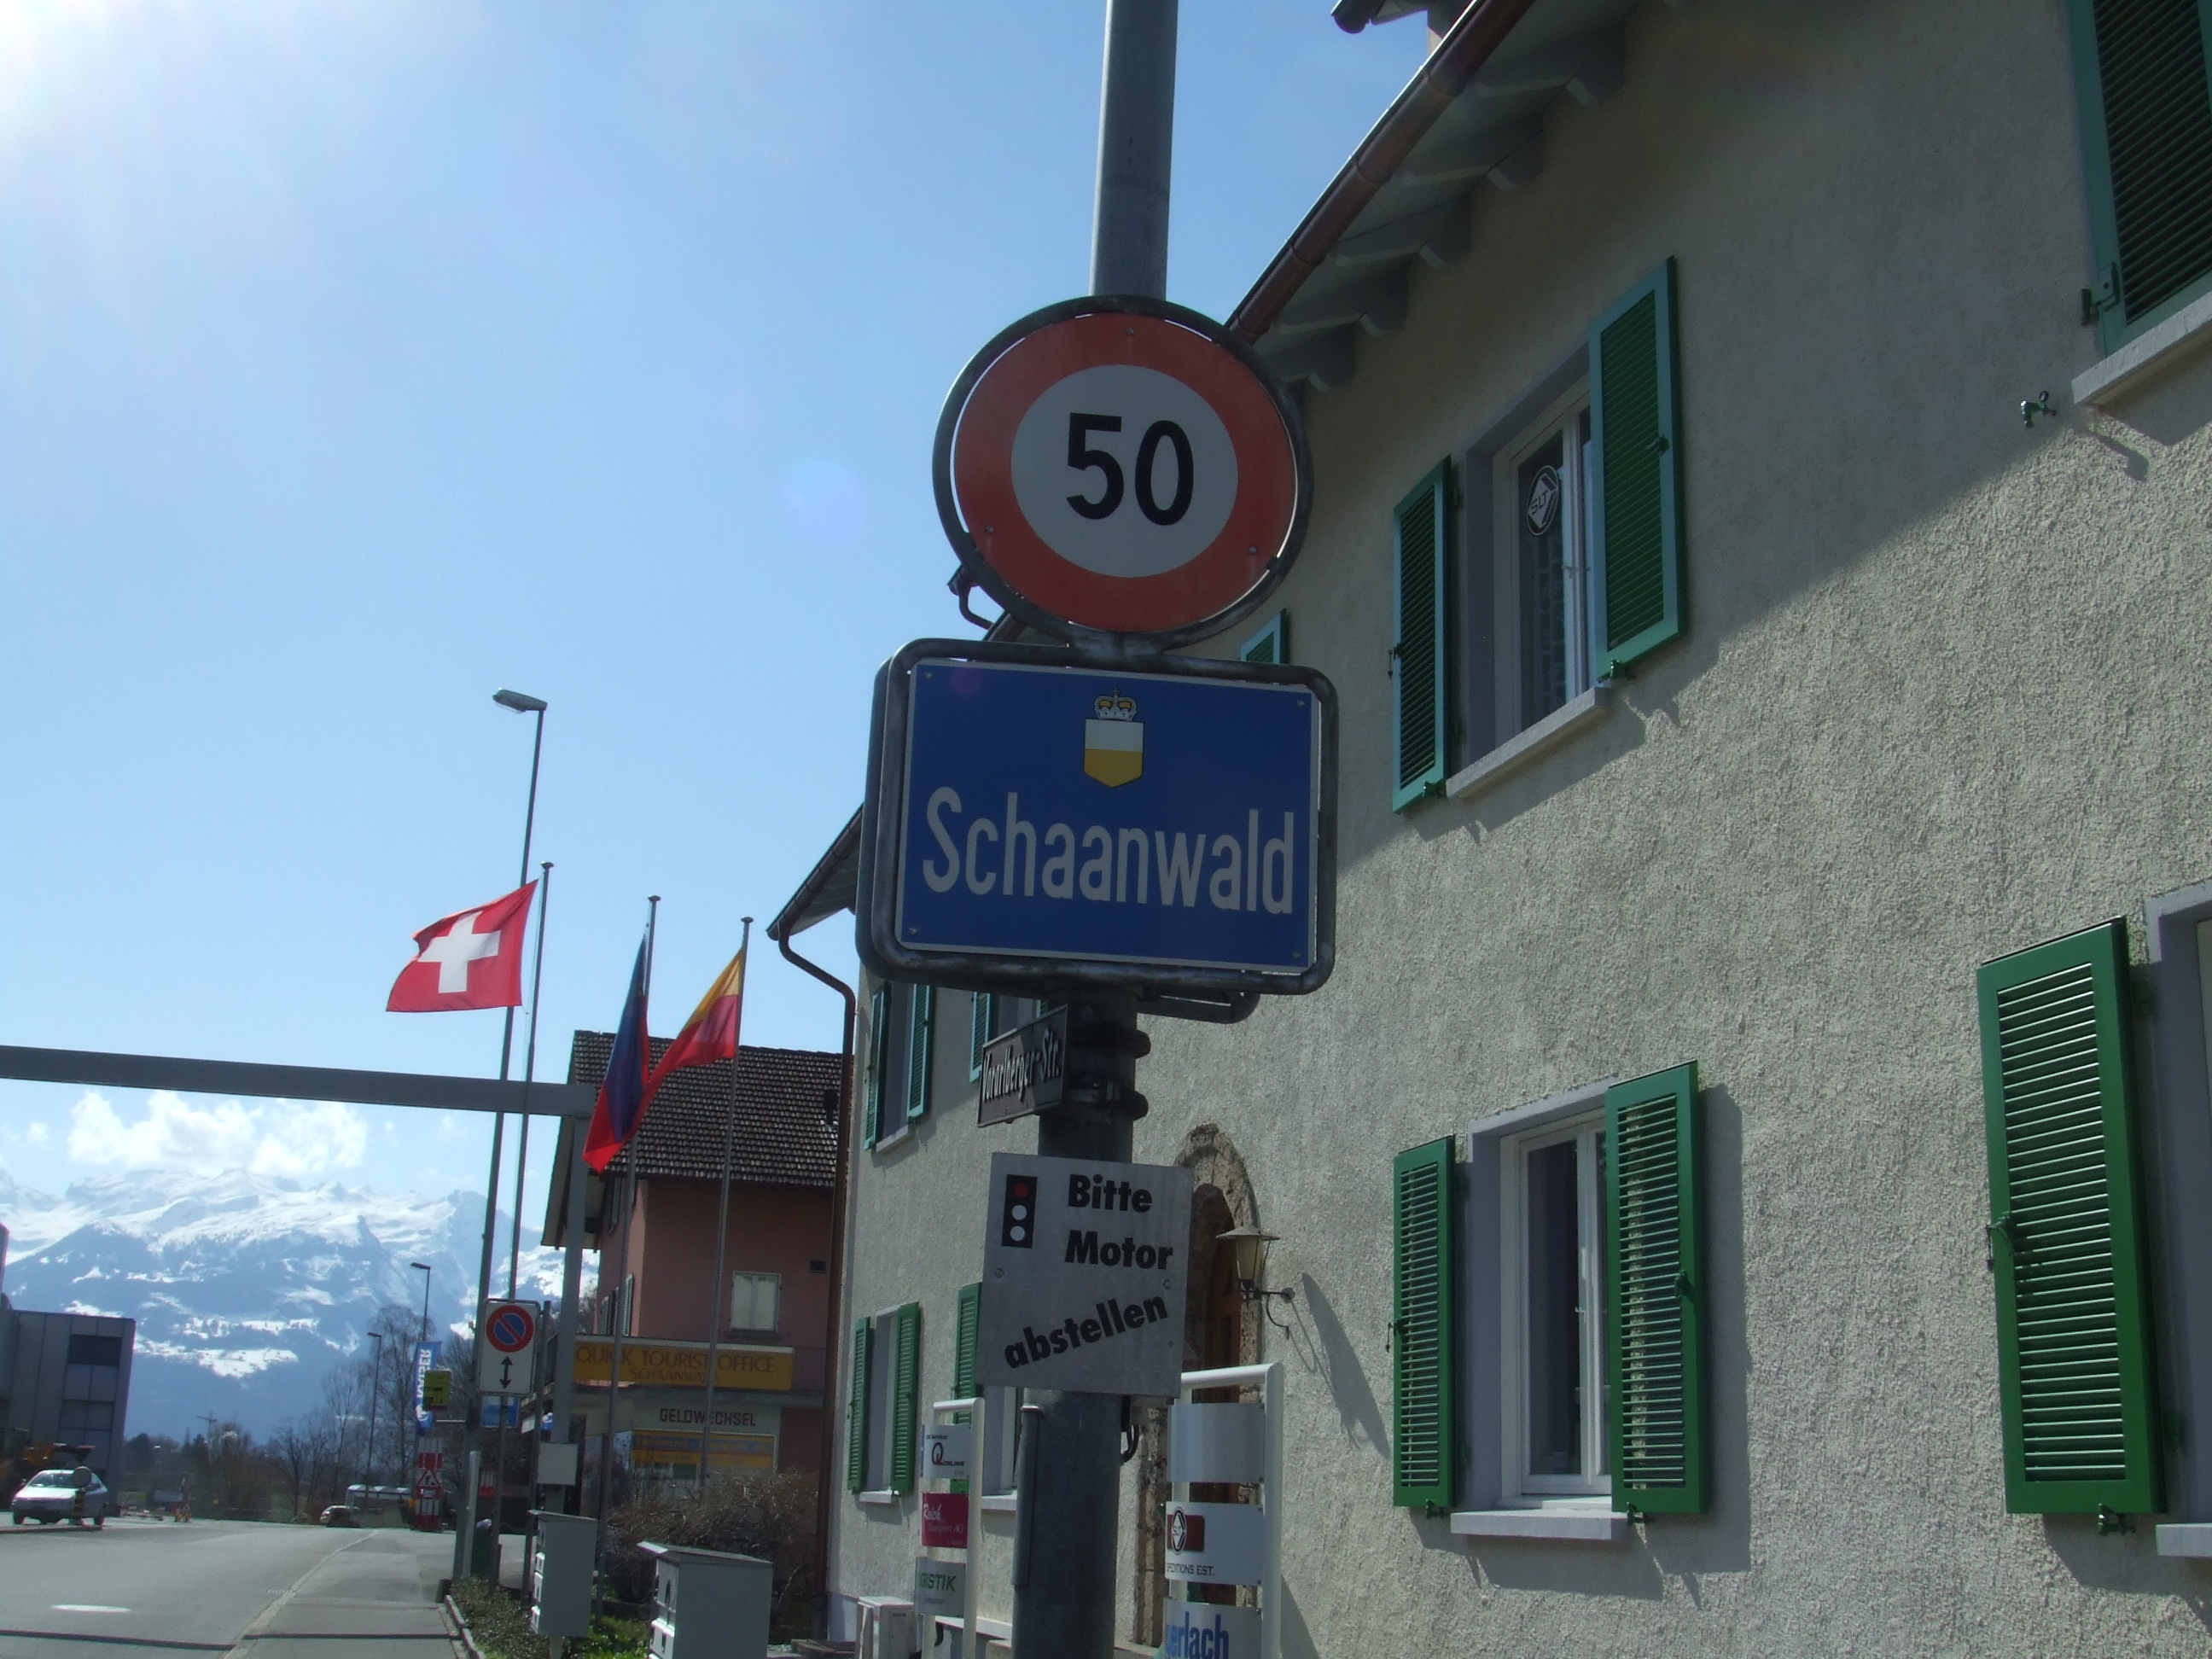 Schaanwald